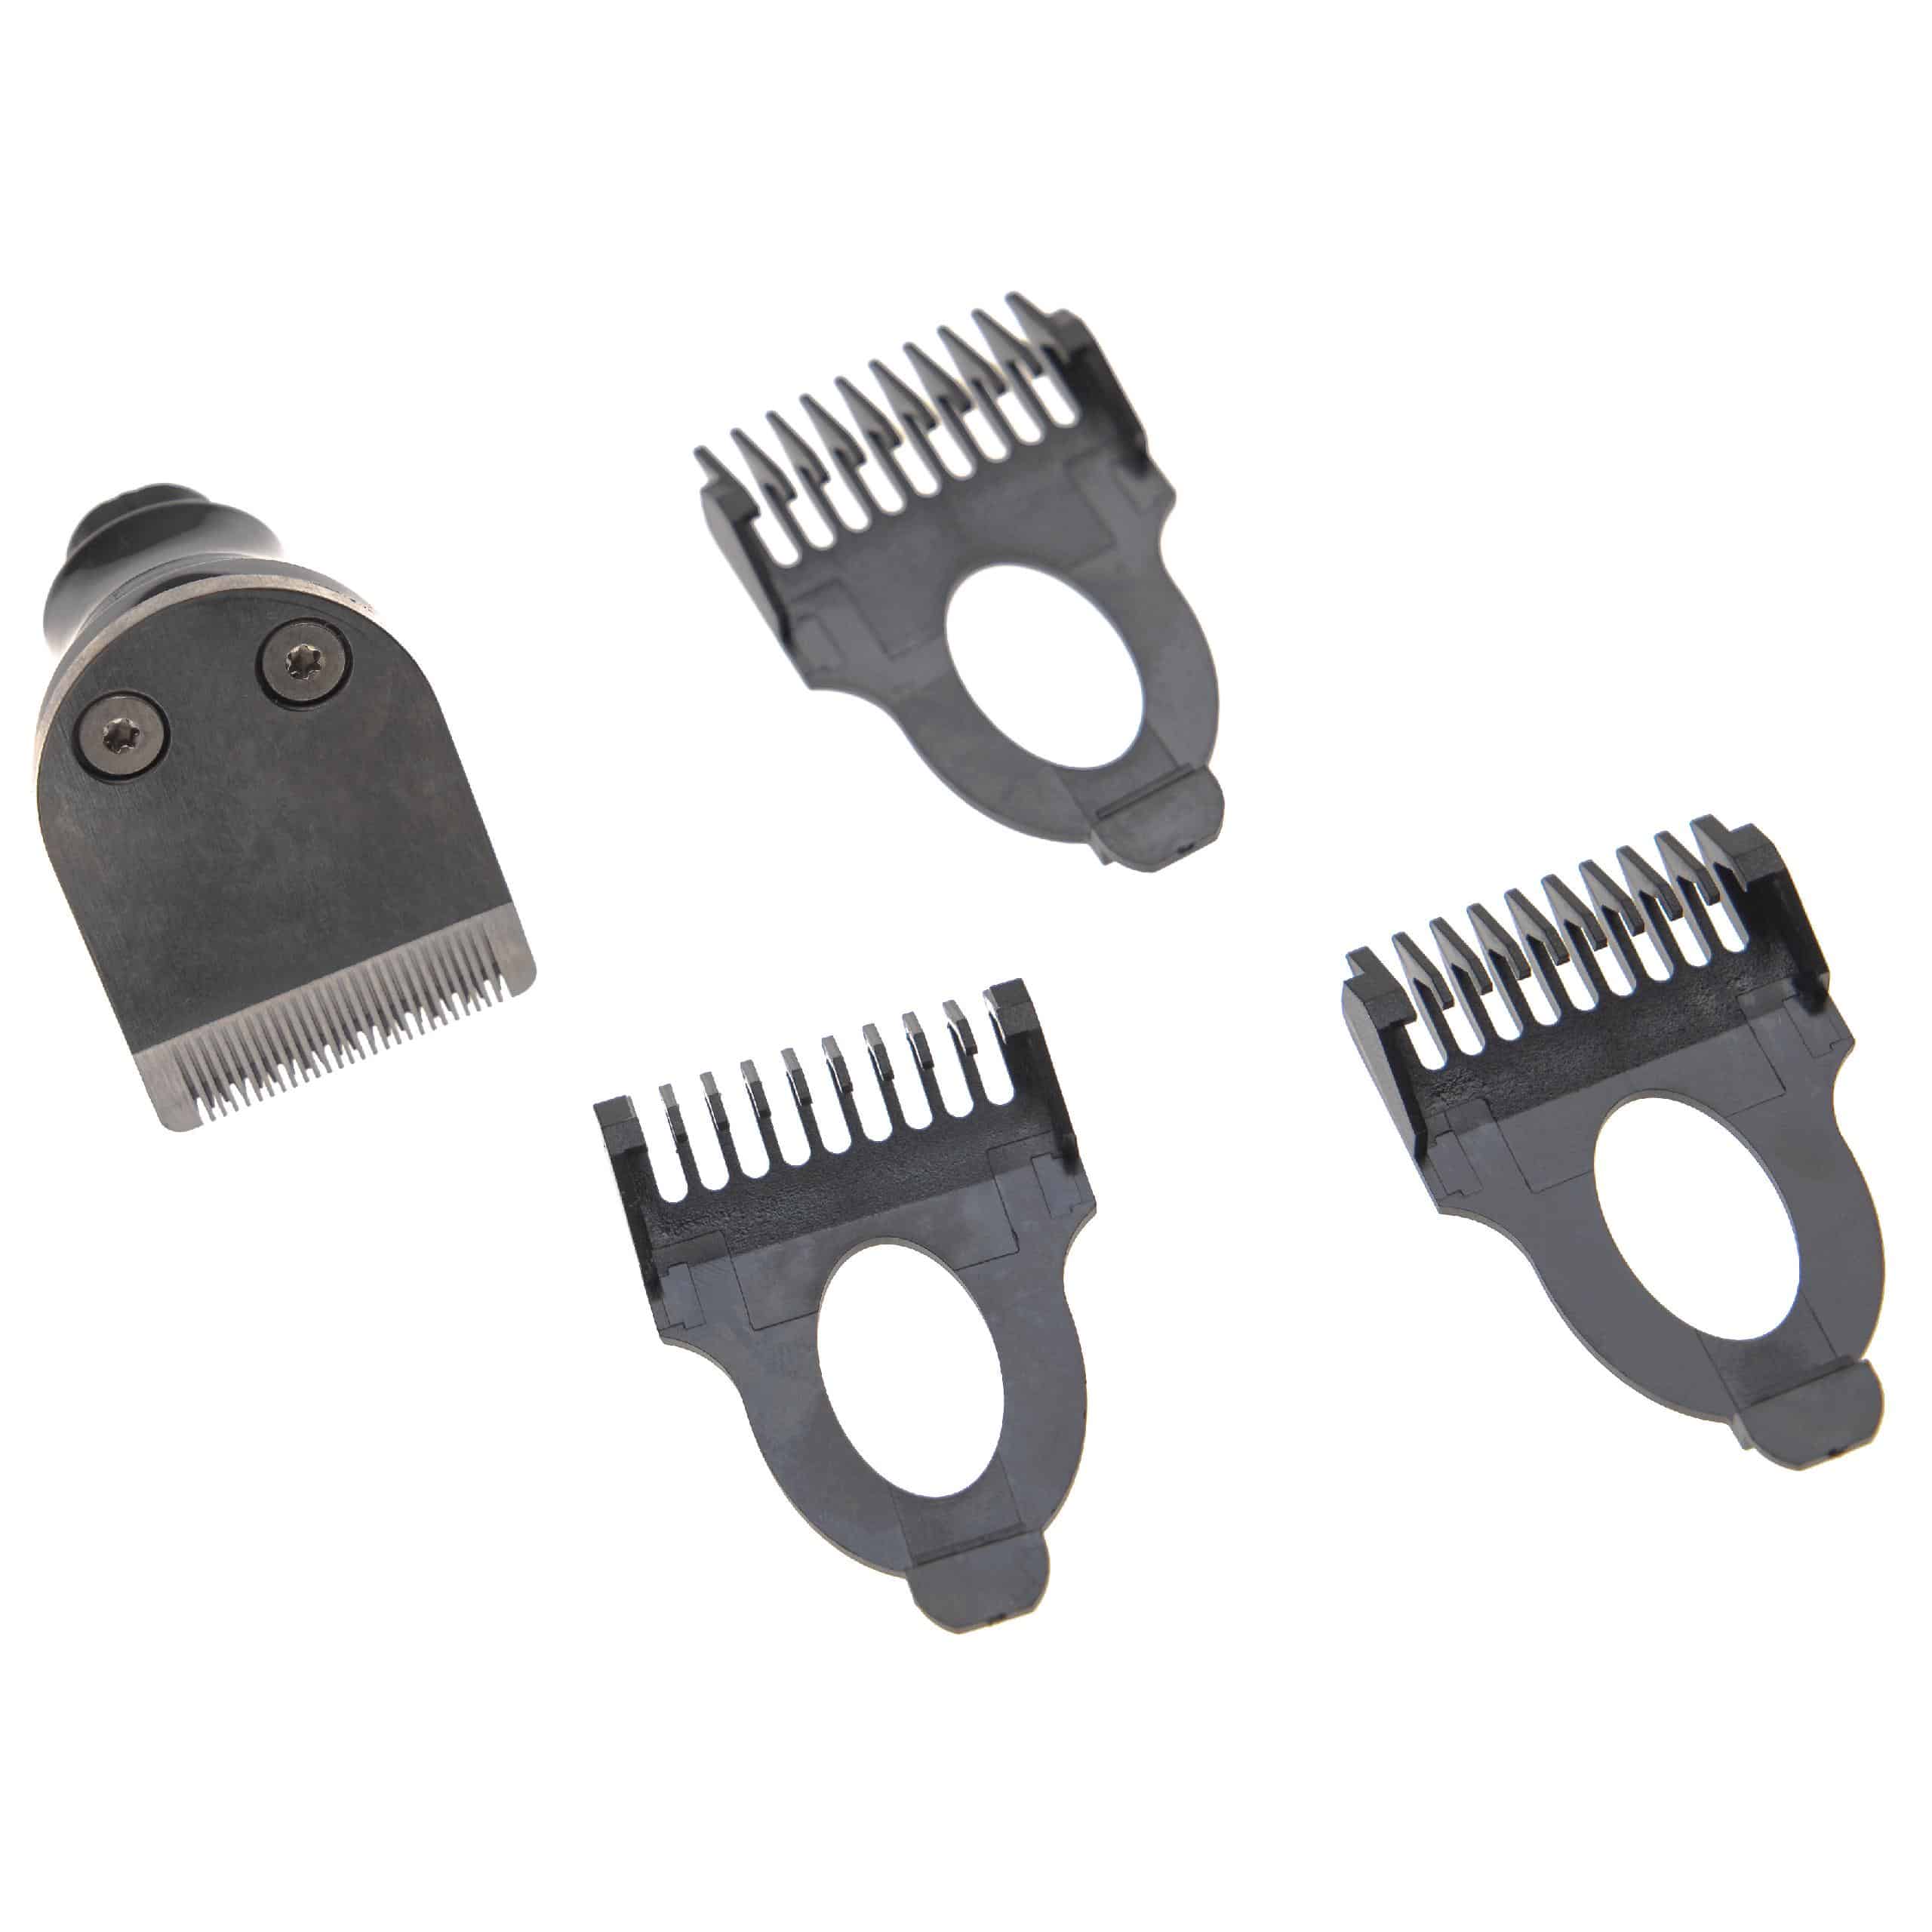 Accesorio de corte (set) para Philips Arcitec afeitadora, etc. - 4 uds. Kit con peine de barba 3 mm / 5 mm / 7